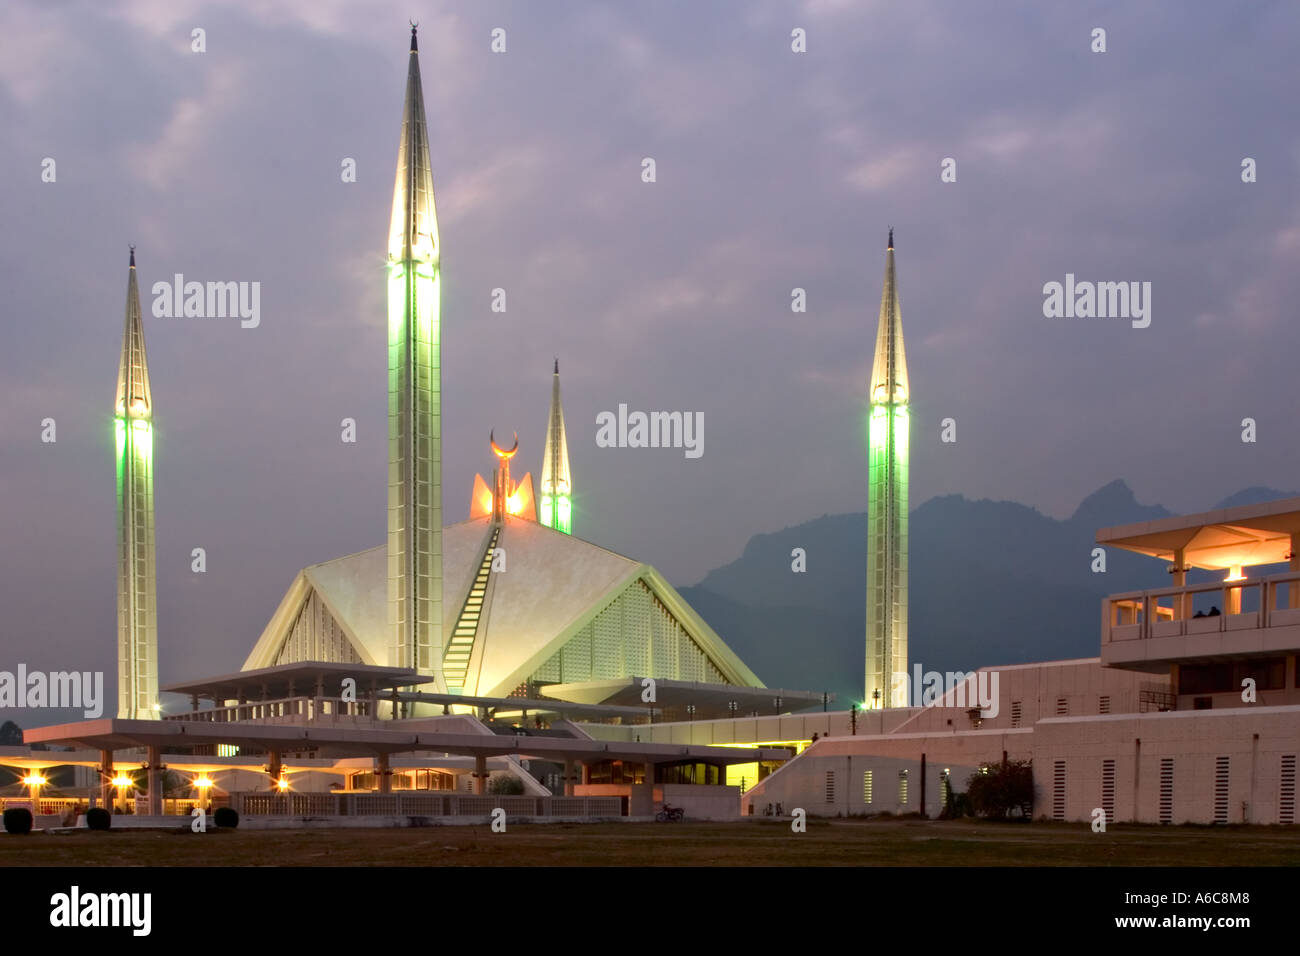 La mosquée Faisal, Islamabad, Pakistan Banque D'Images